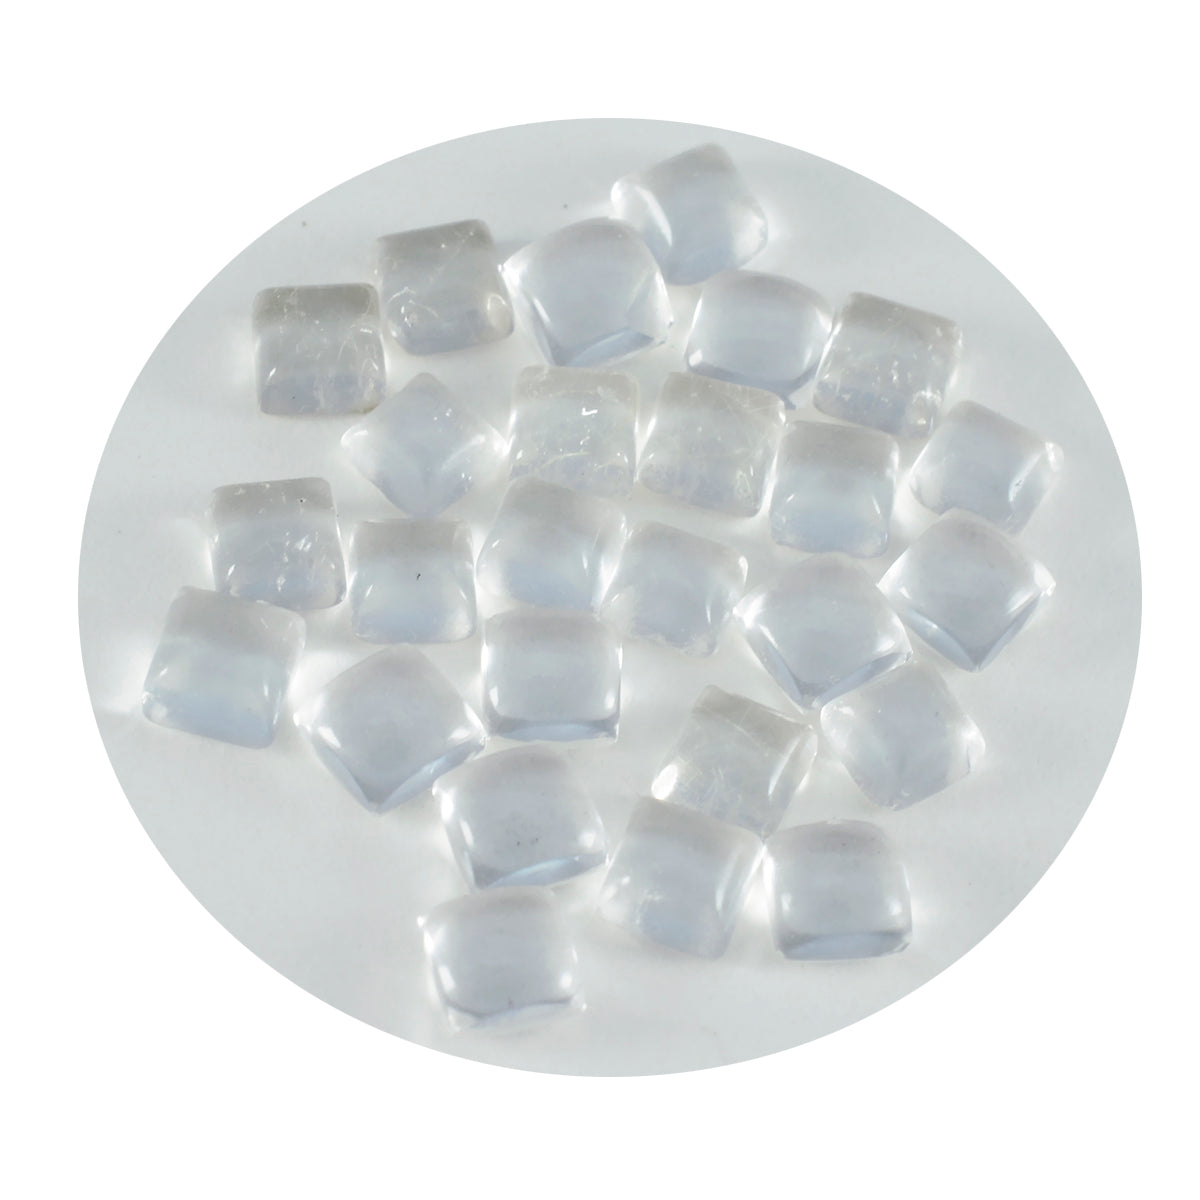 riyogems 1шт белый кристалл кварц кабошон 6x6 мм квадратная форма камень отличного качества